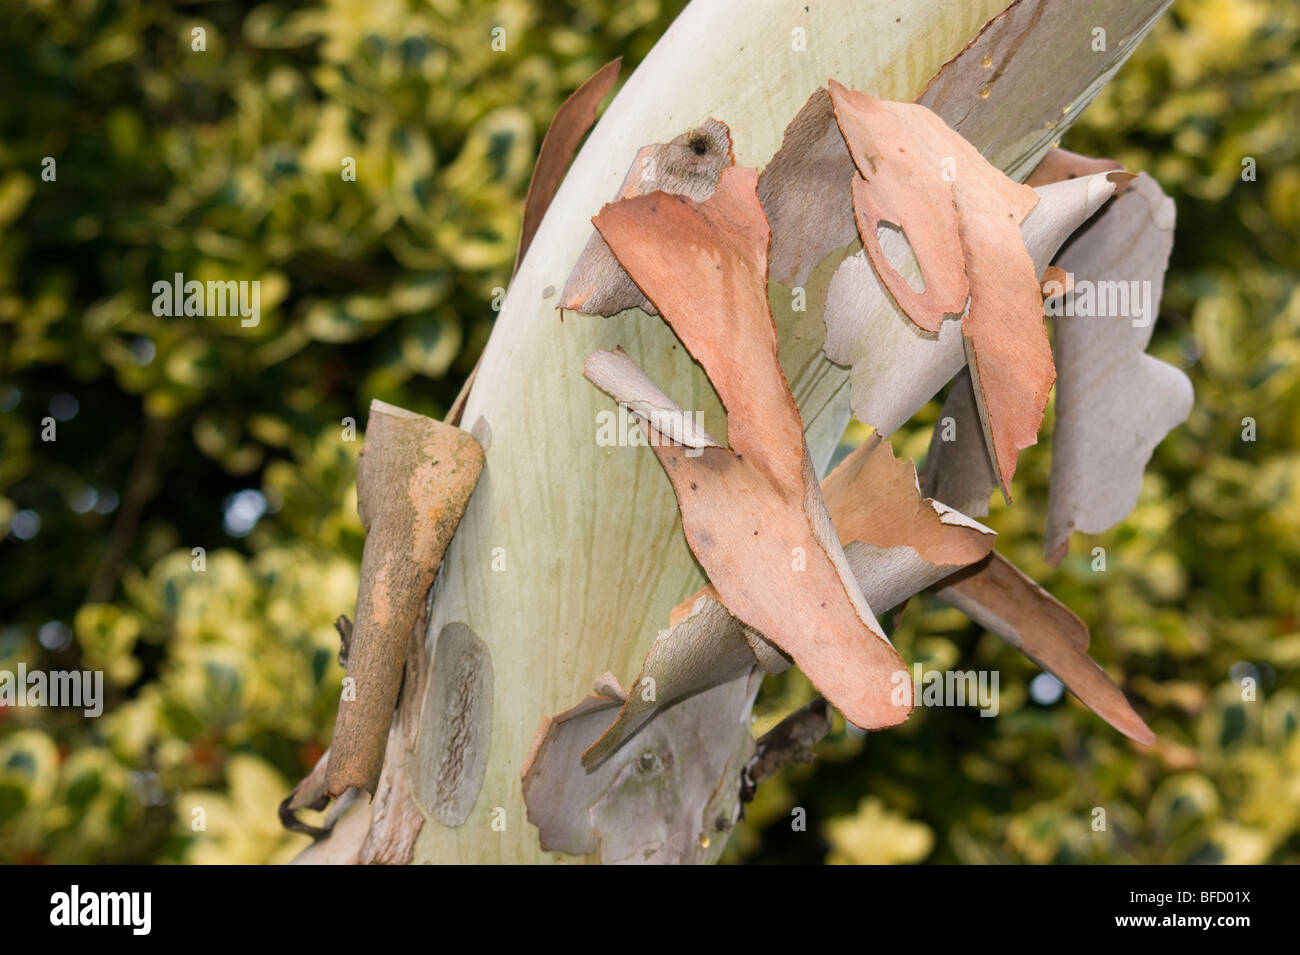 Eukalyptus-Baum Schälen der Rinde Stockfotografie - Alamy